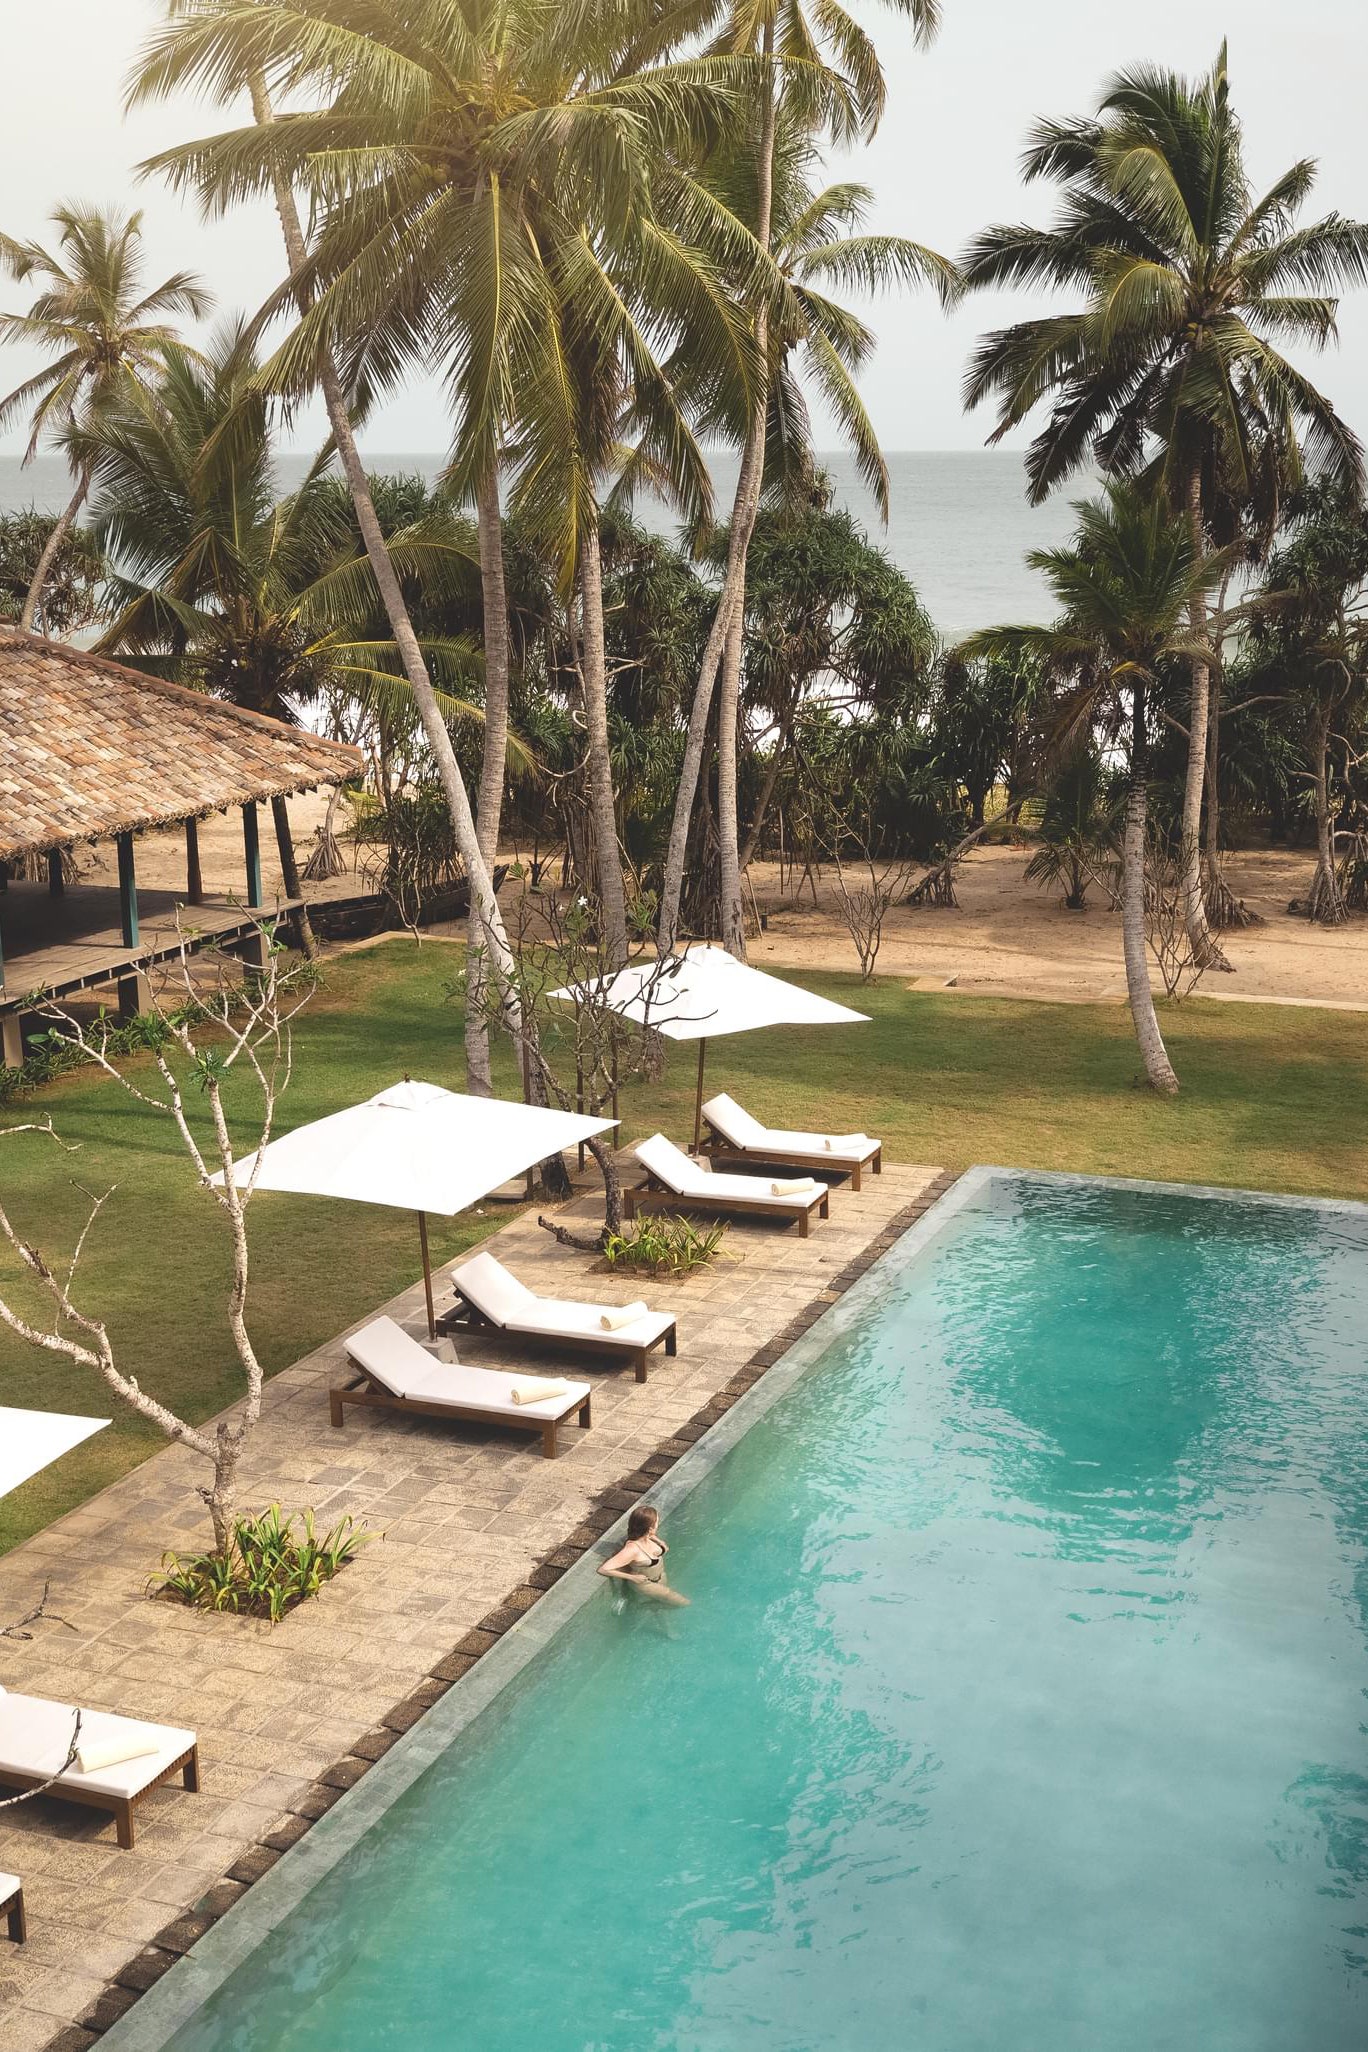 卡亞姆之家（Kayaam House）開幕是斯里蘭卡旅遊業豪華和健康產業蓬勃發展的標誌之一。